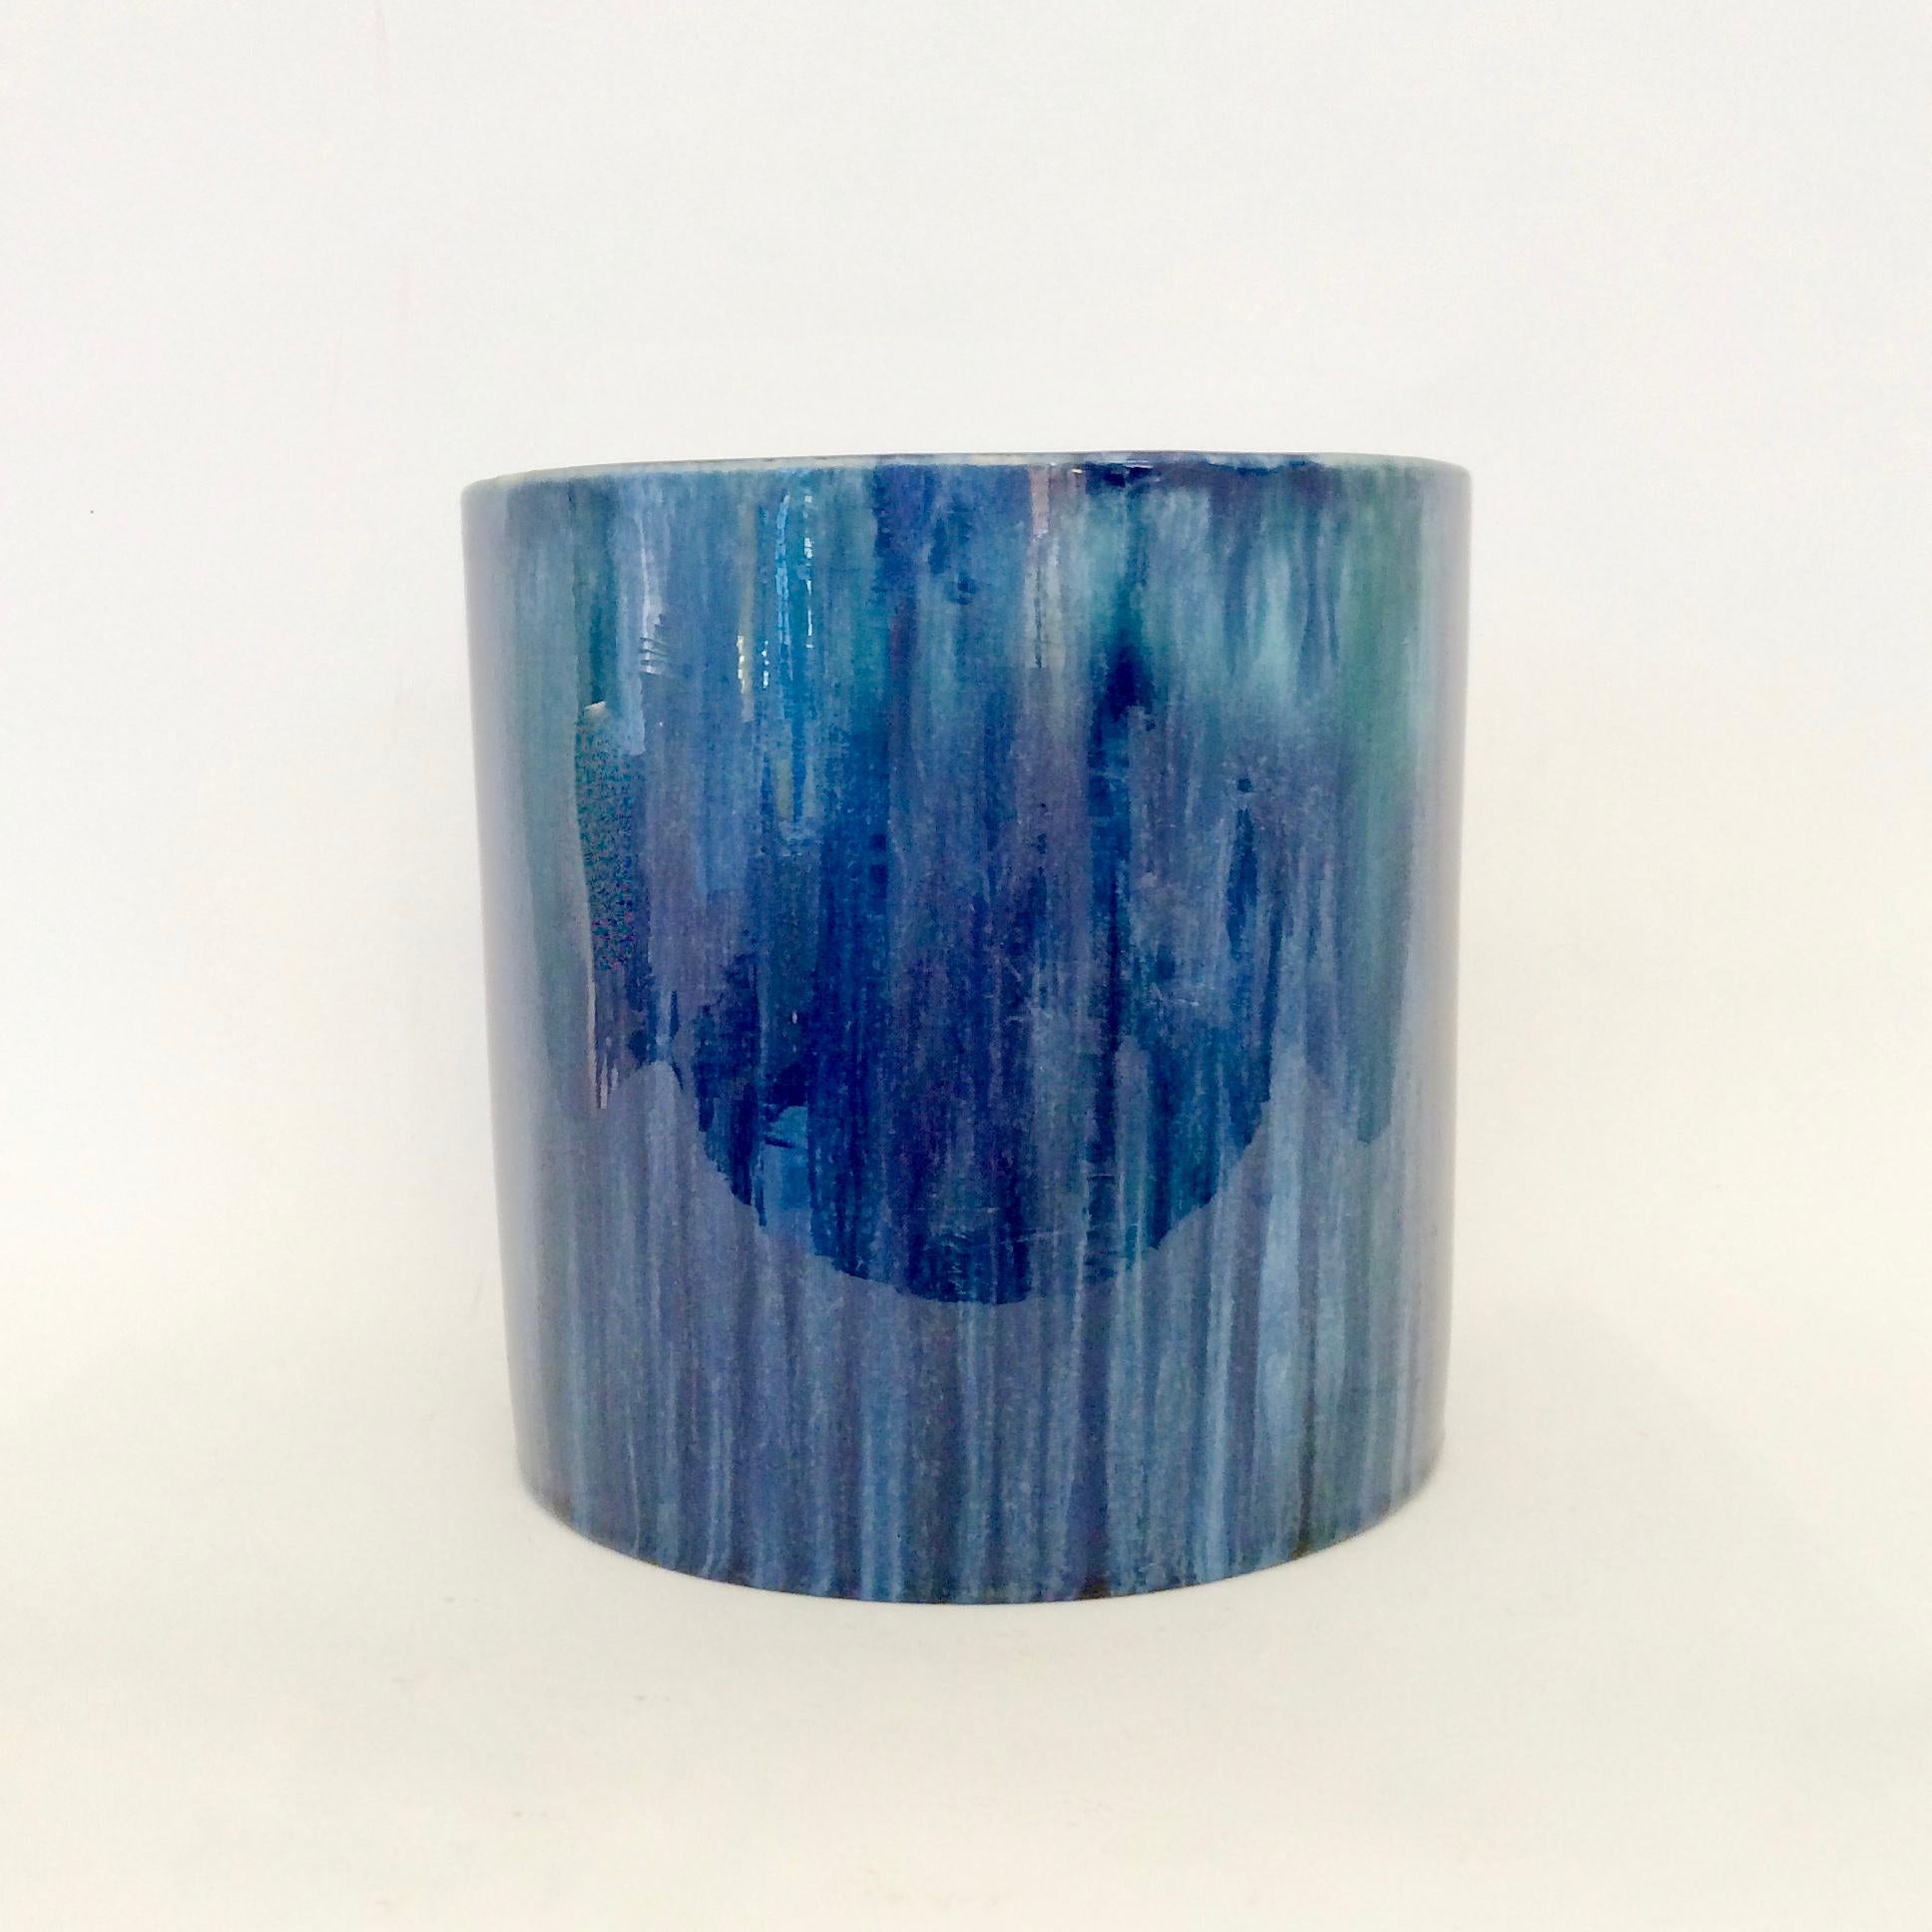 Ceramic Serrurier-Bovy Blue Enameled Earthenware Cylinder Vase, 1905, Belgium For Sale